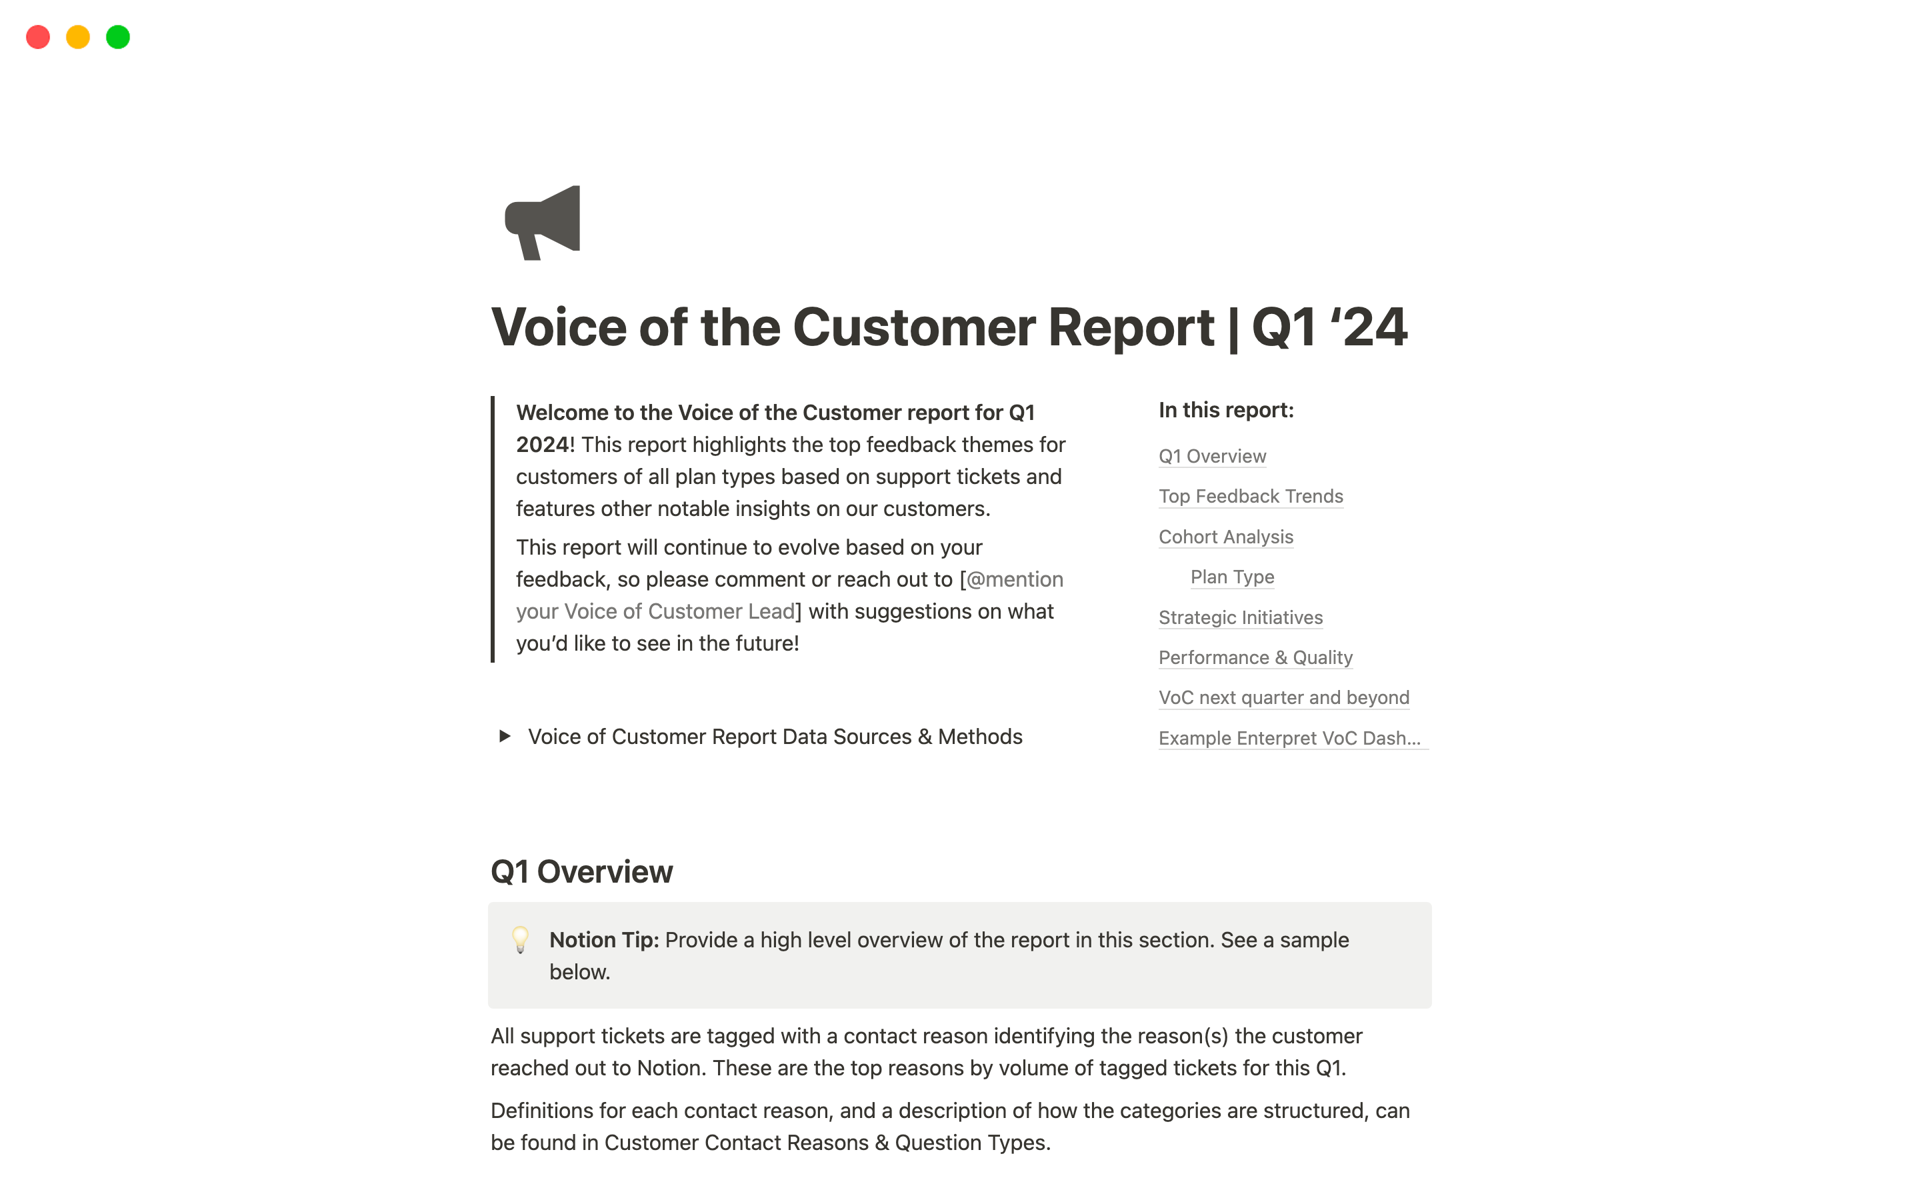 Aperçu du modèle de Voice of Customer Report